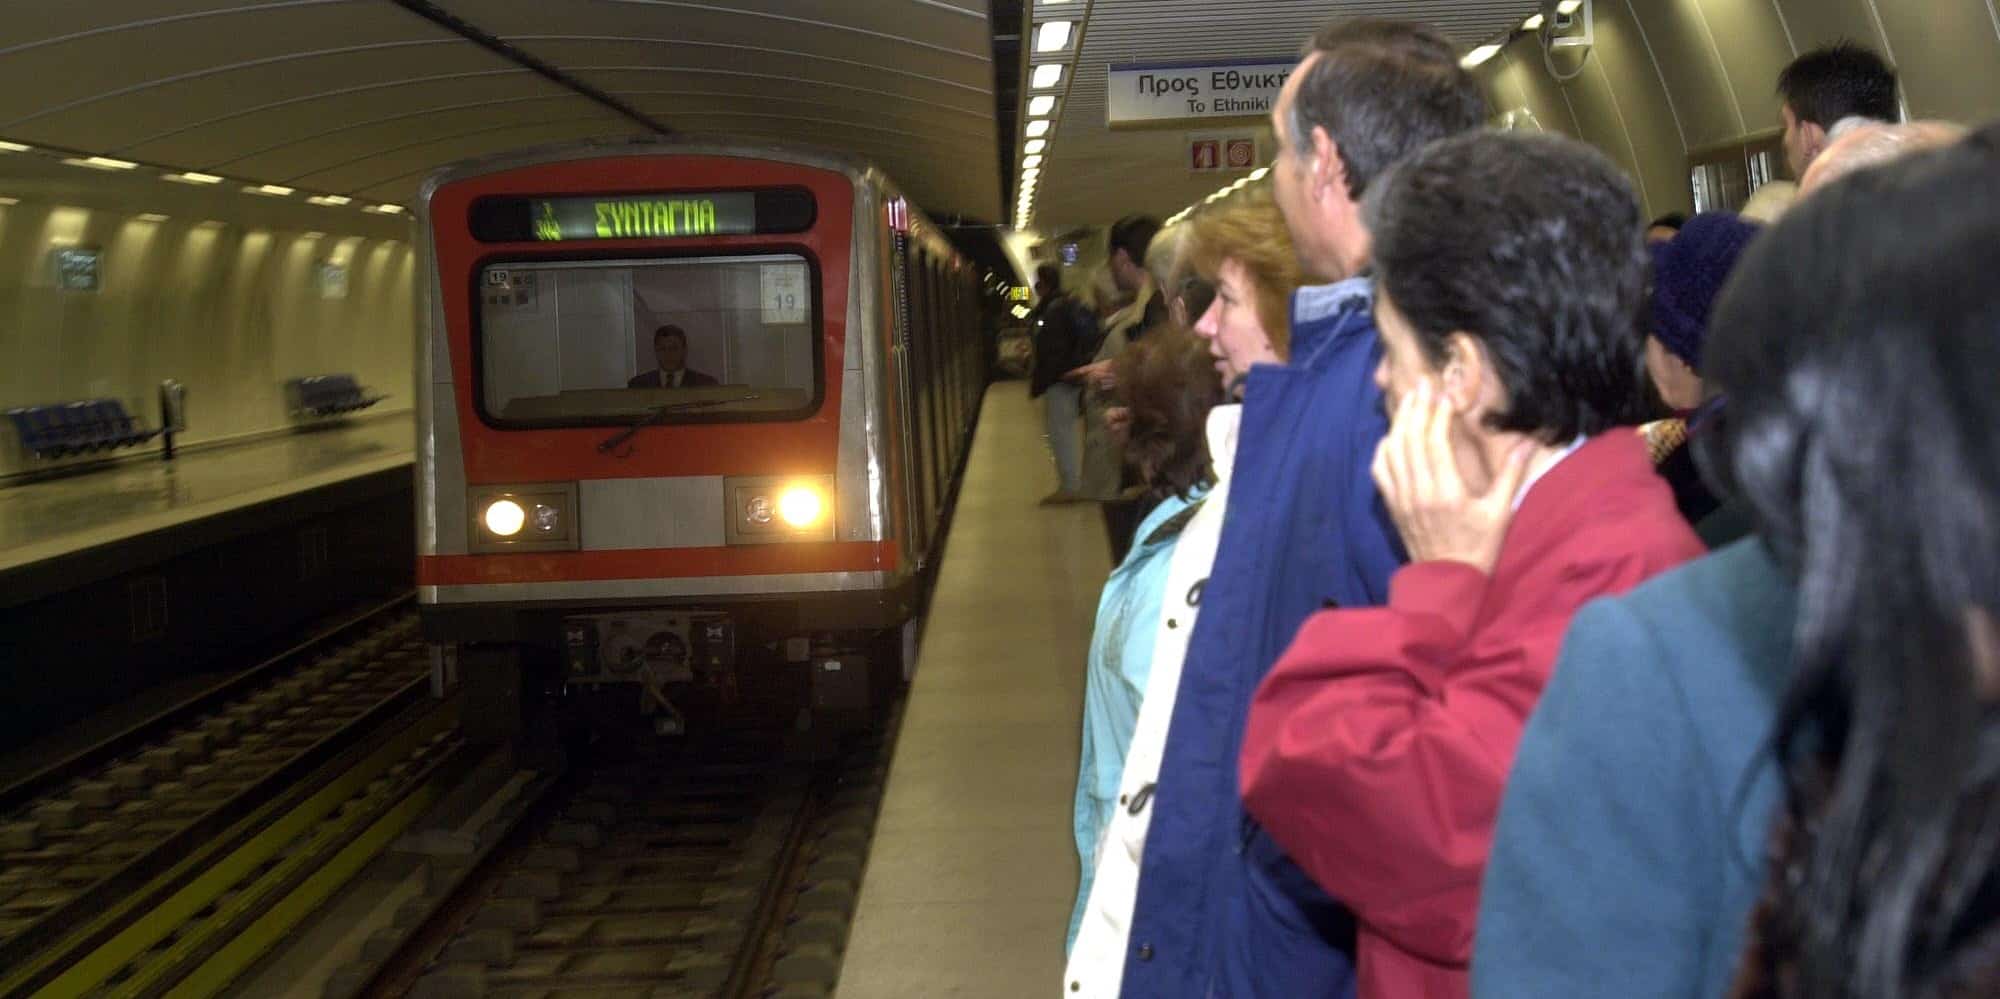 Η πρώτη μέρα λειτουργίας του Μετρό στην Αθήνα